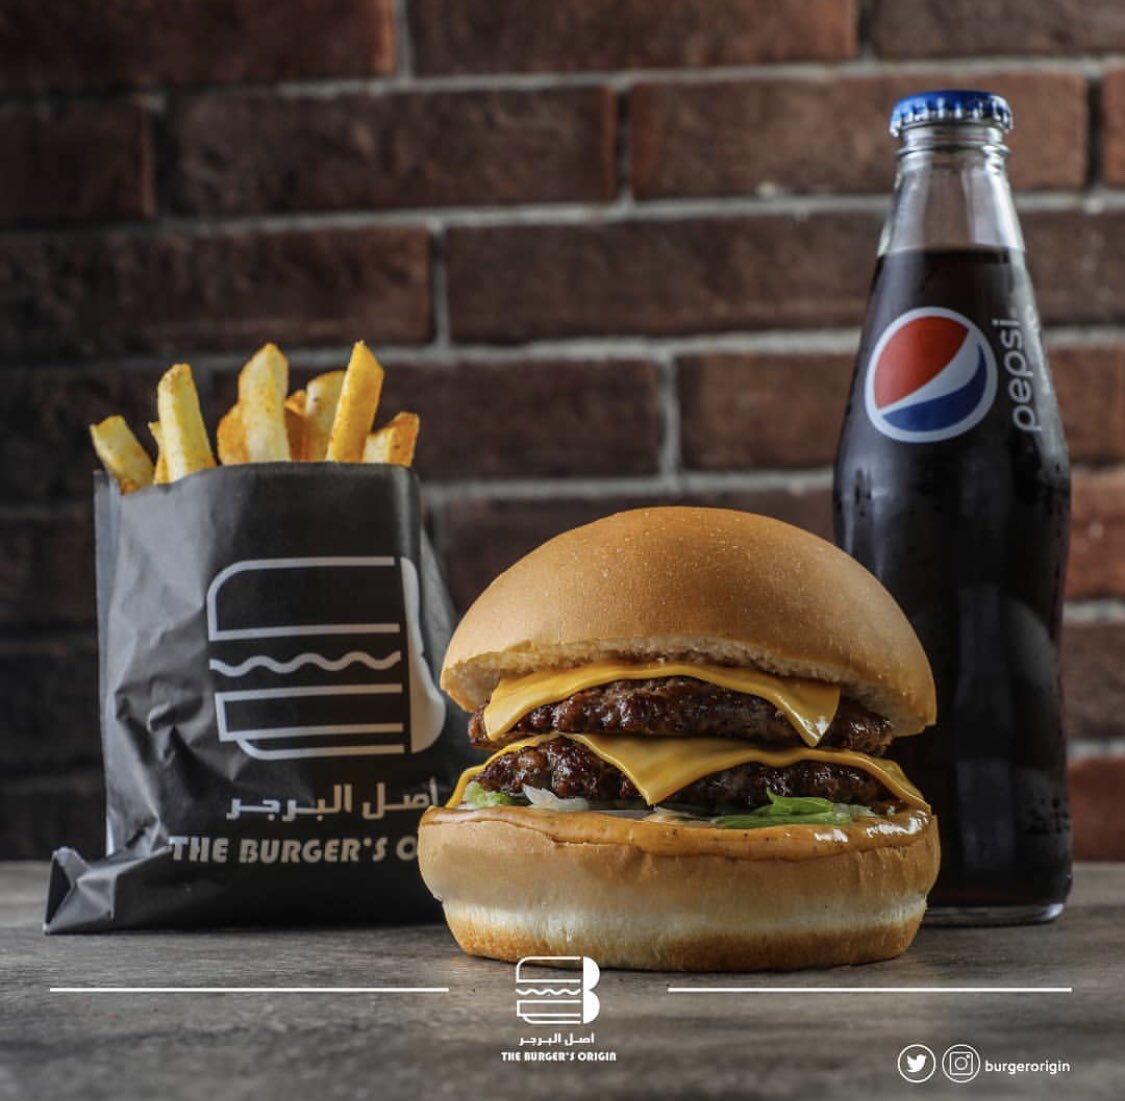 قريبا في عنيزة On Twitter قريبا في عنيزة مطعم أصل البرجر The Burgers Origin Burgerorigin يمتلك سلسلة واسعة من الفروع على مستوى المملكة تصل حتى 17 فرع في مختلف مناطق المملكة